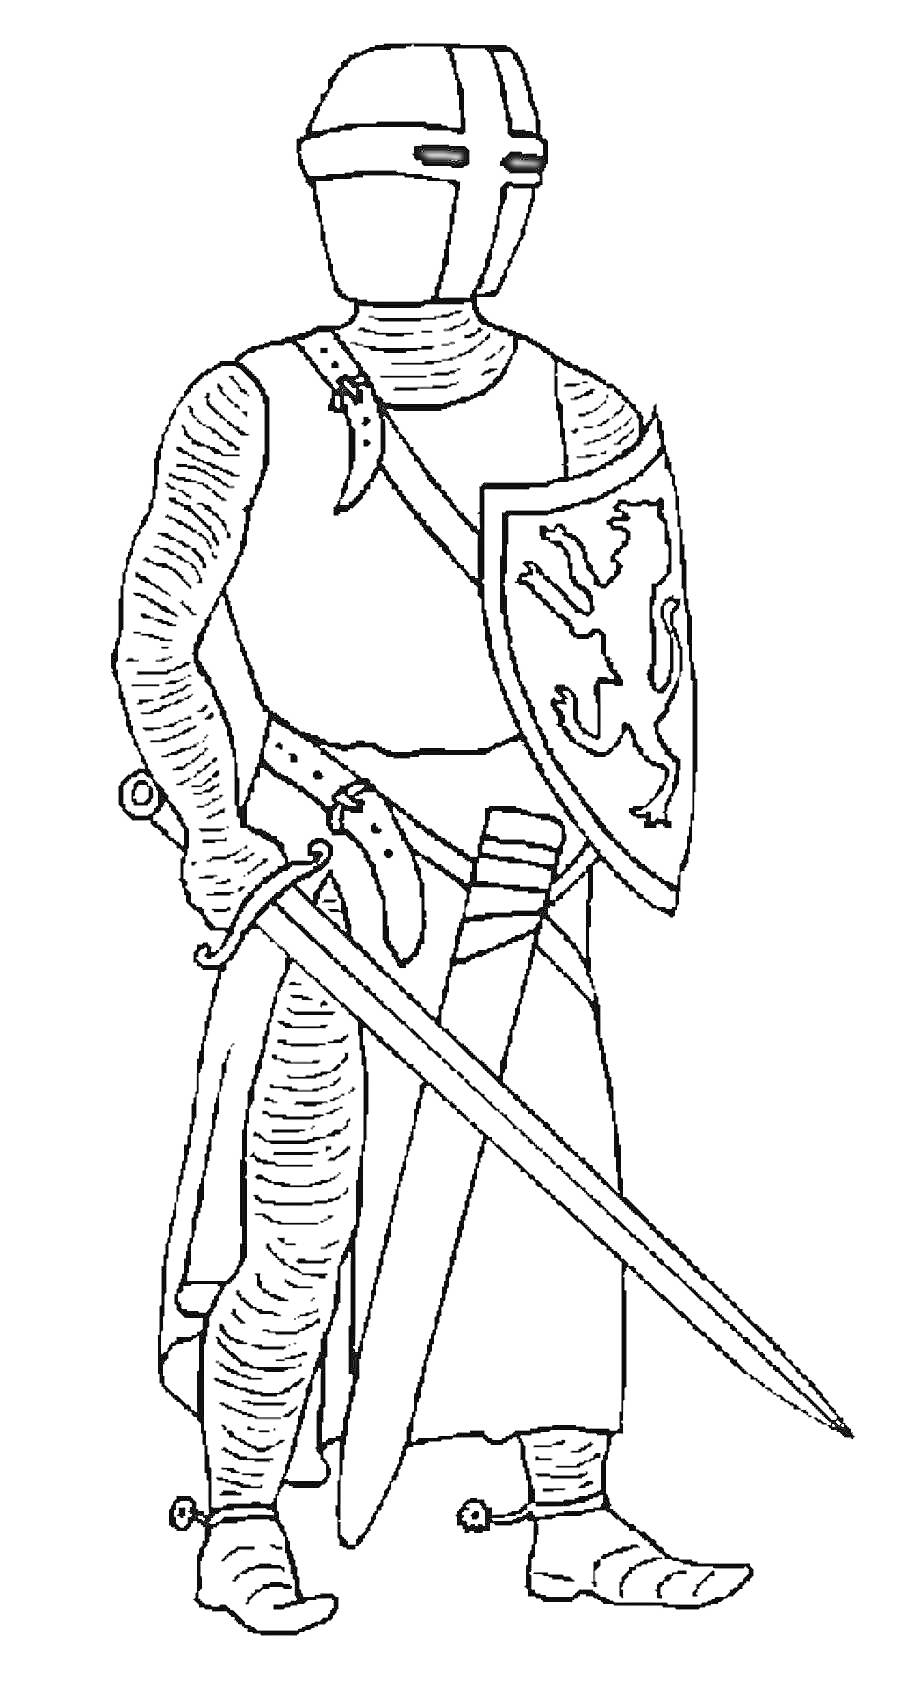 Рыцарь в доспехах с мечом и щитом с изображением льва